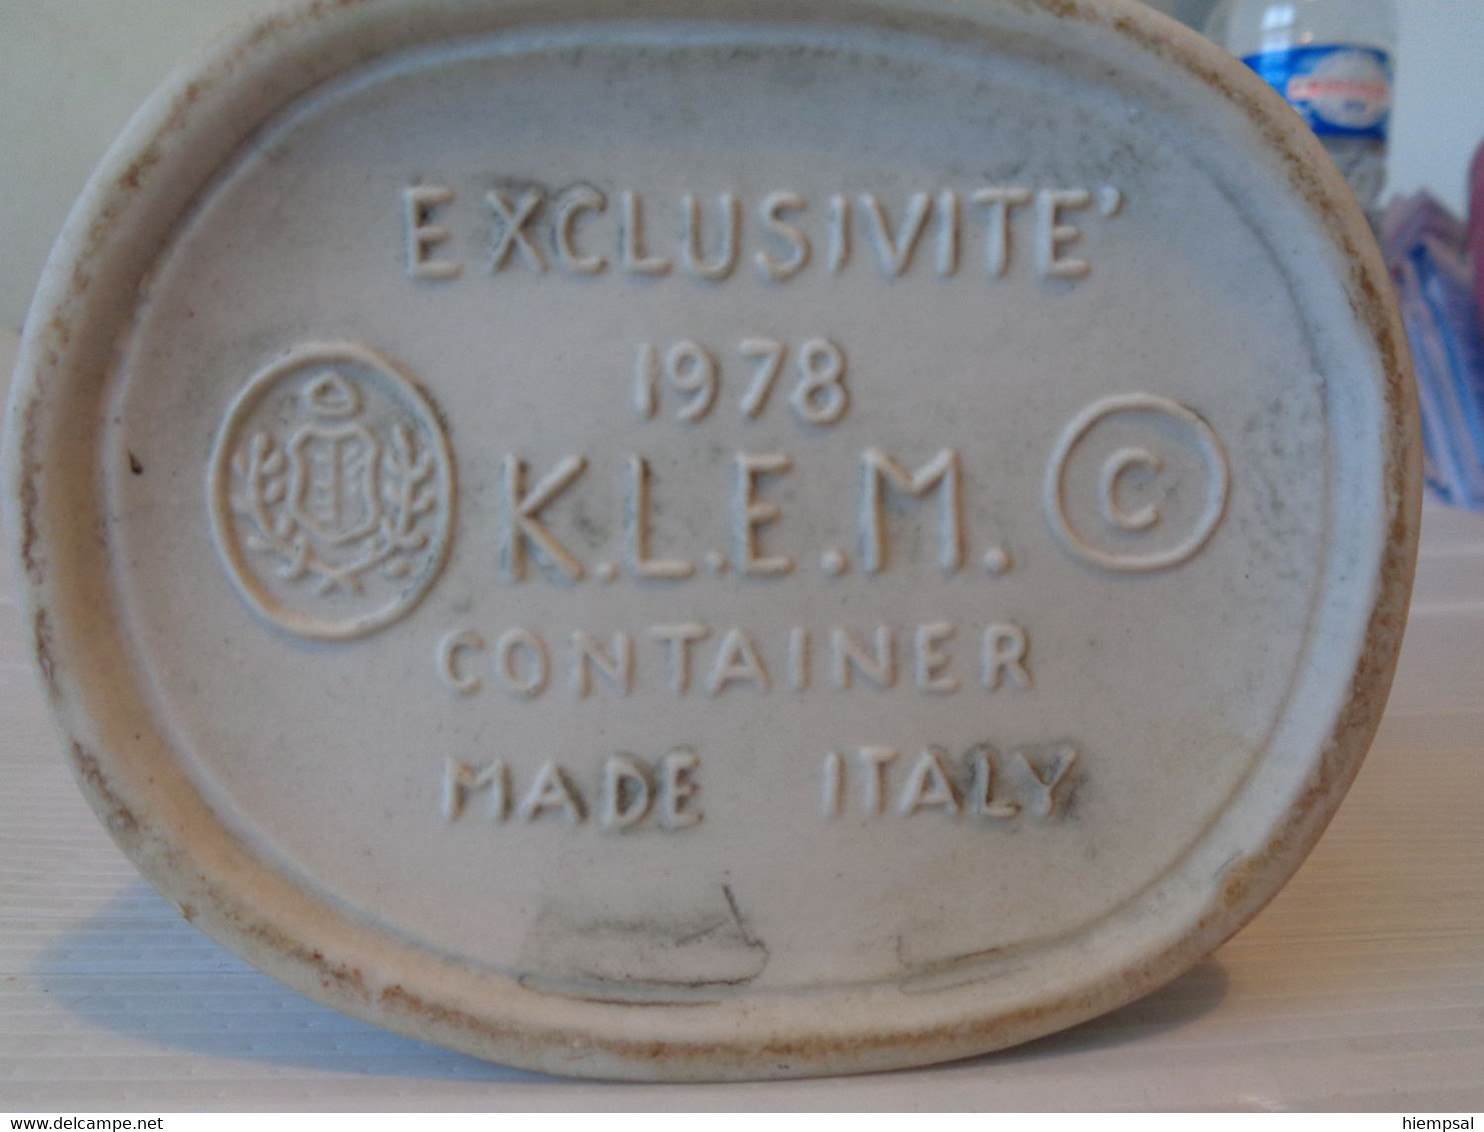 Rès Belle Bouteille Pour  Liqueurs De La Marque .K .L .E .M  MADE ITALY EXCLUSIVITE  1978  Ht  31 Cms - Spirituosen